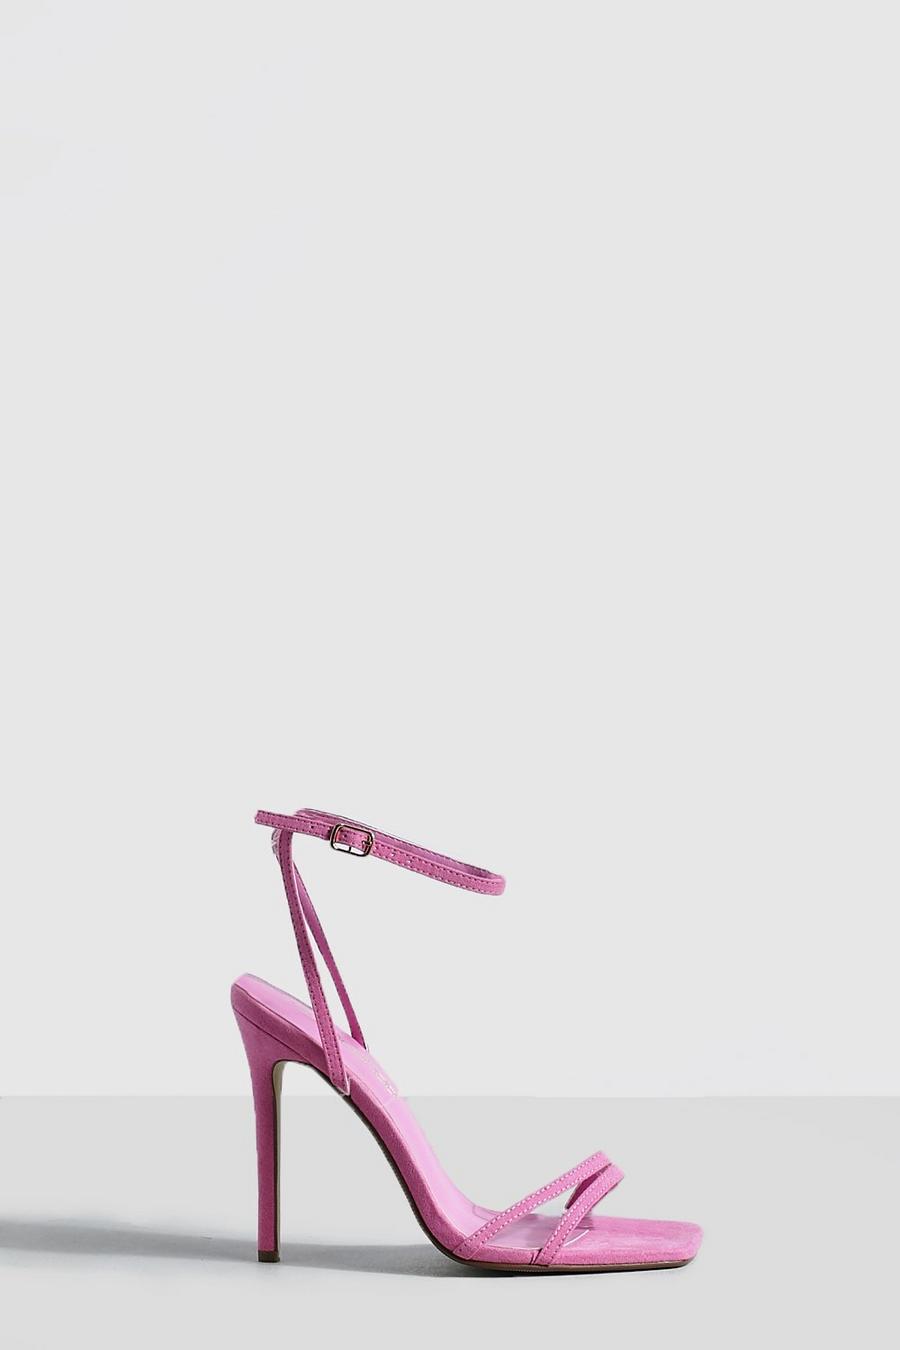 Scarpe a effetto nudo con doppia fascetta e tacco a spillo, Neon-pink rosa